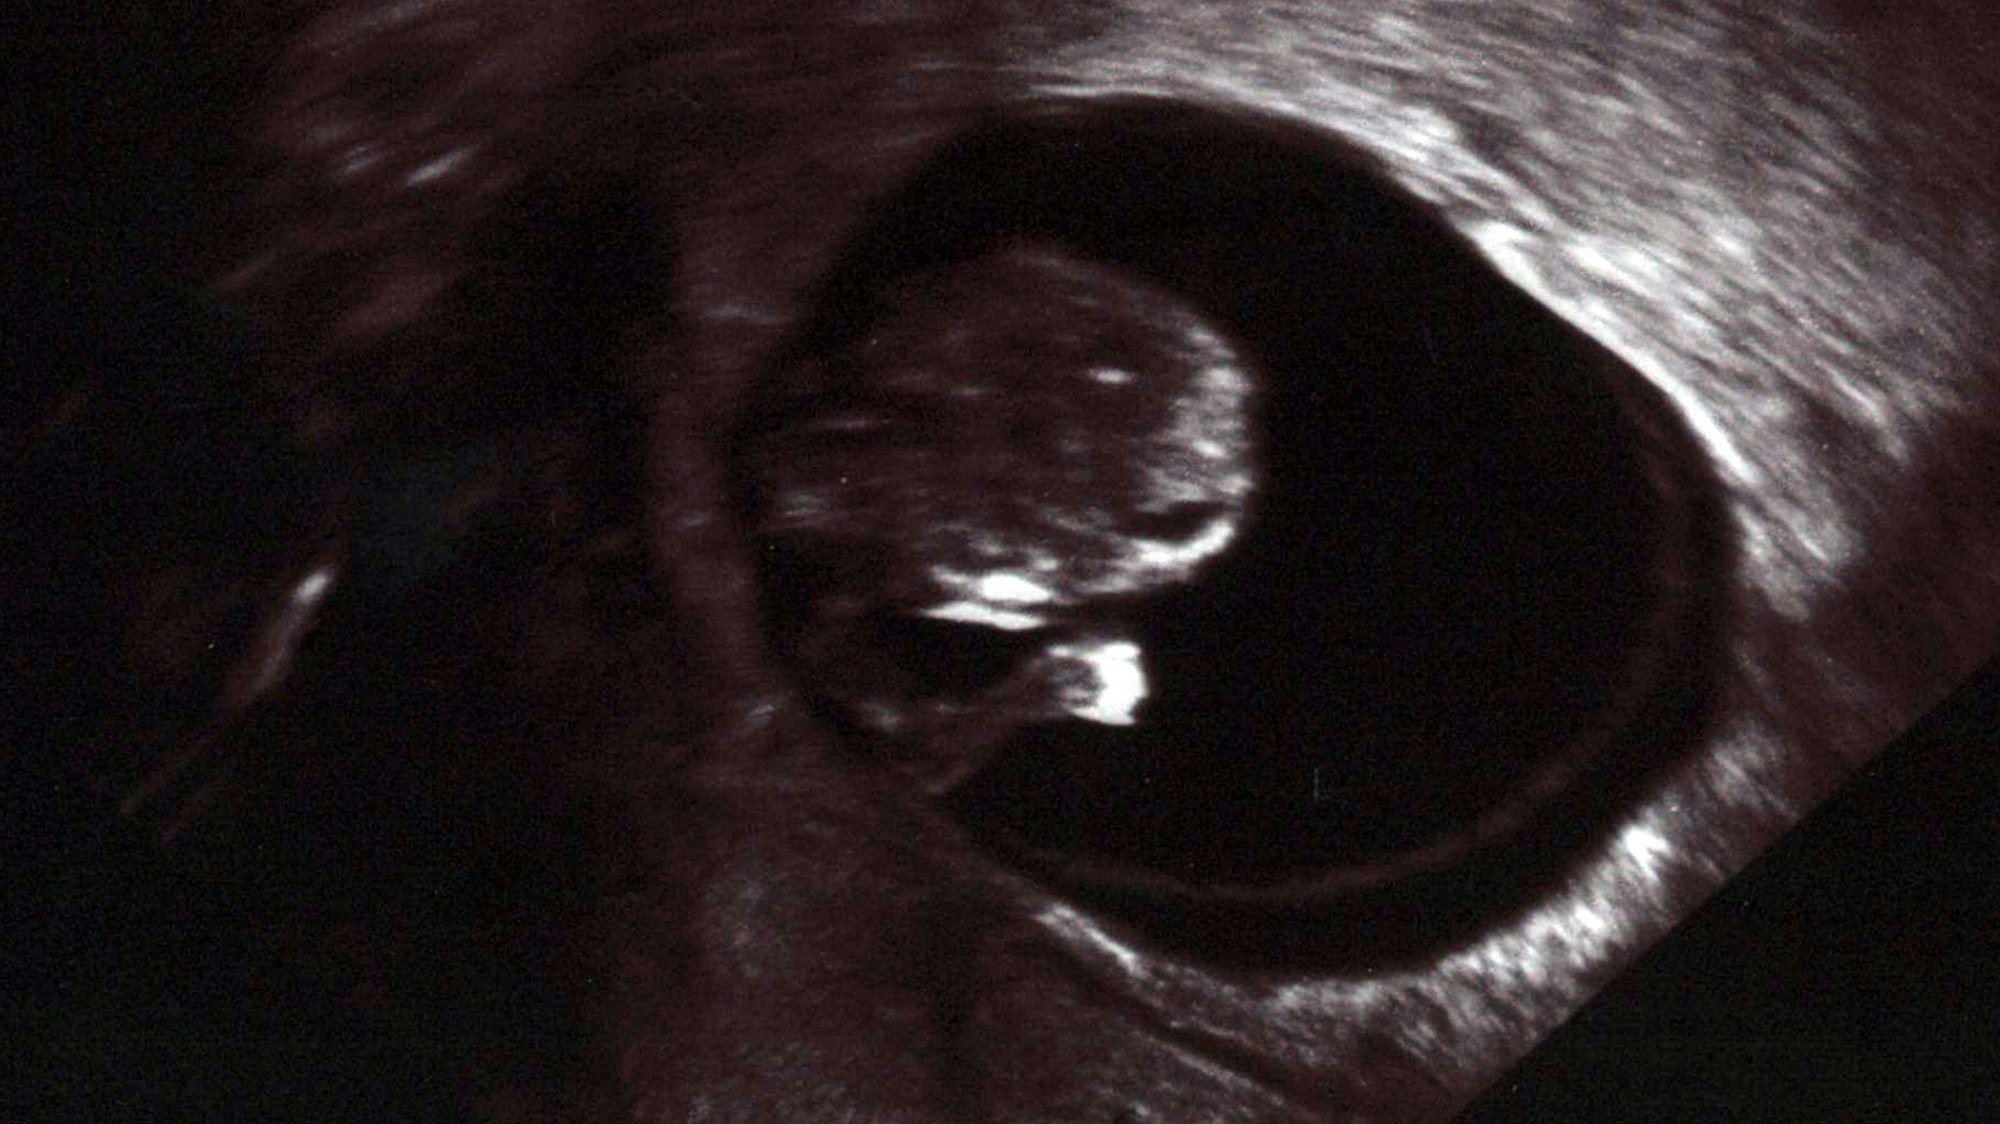 Schon in der 10. Woche ist das Ungeborene deutlich zu erkennen und man kann seinen Herzschlag auf dem Ultraschallgerät sehen.